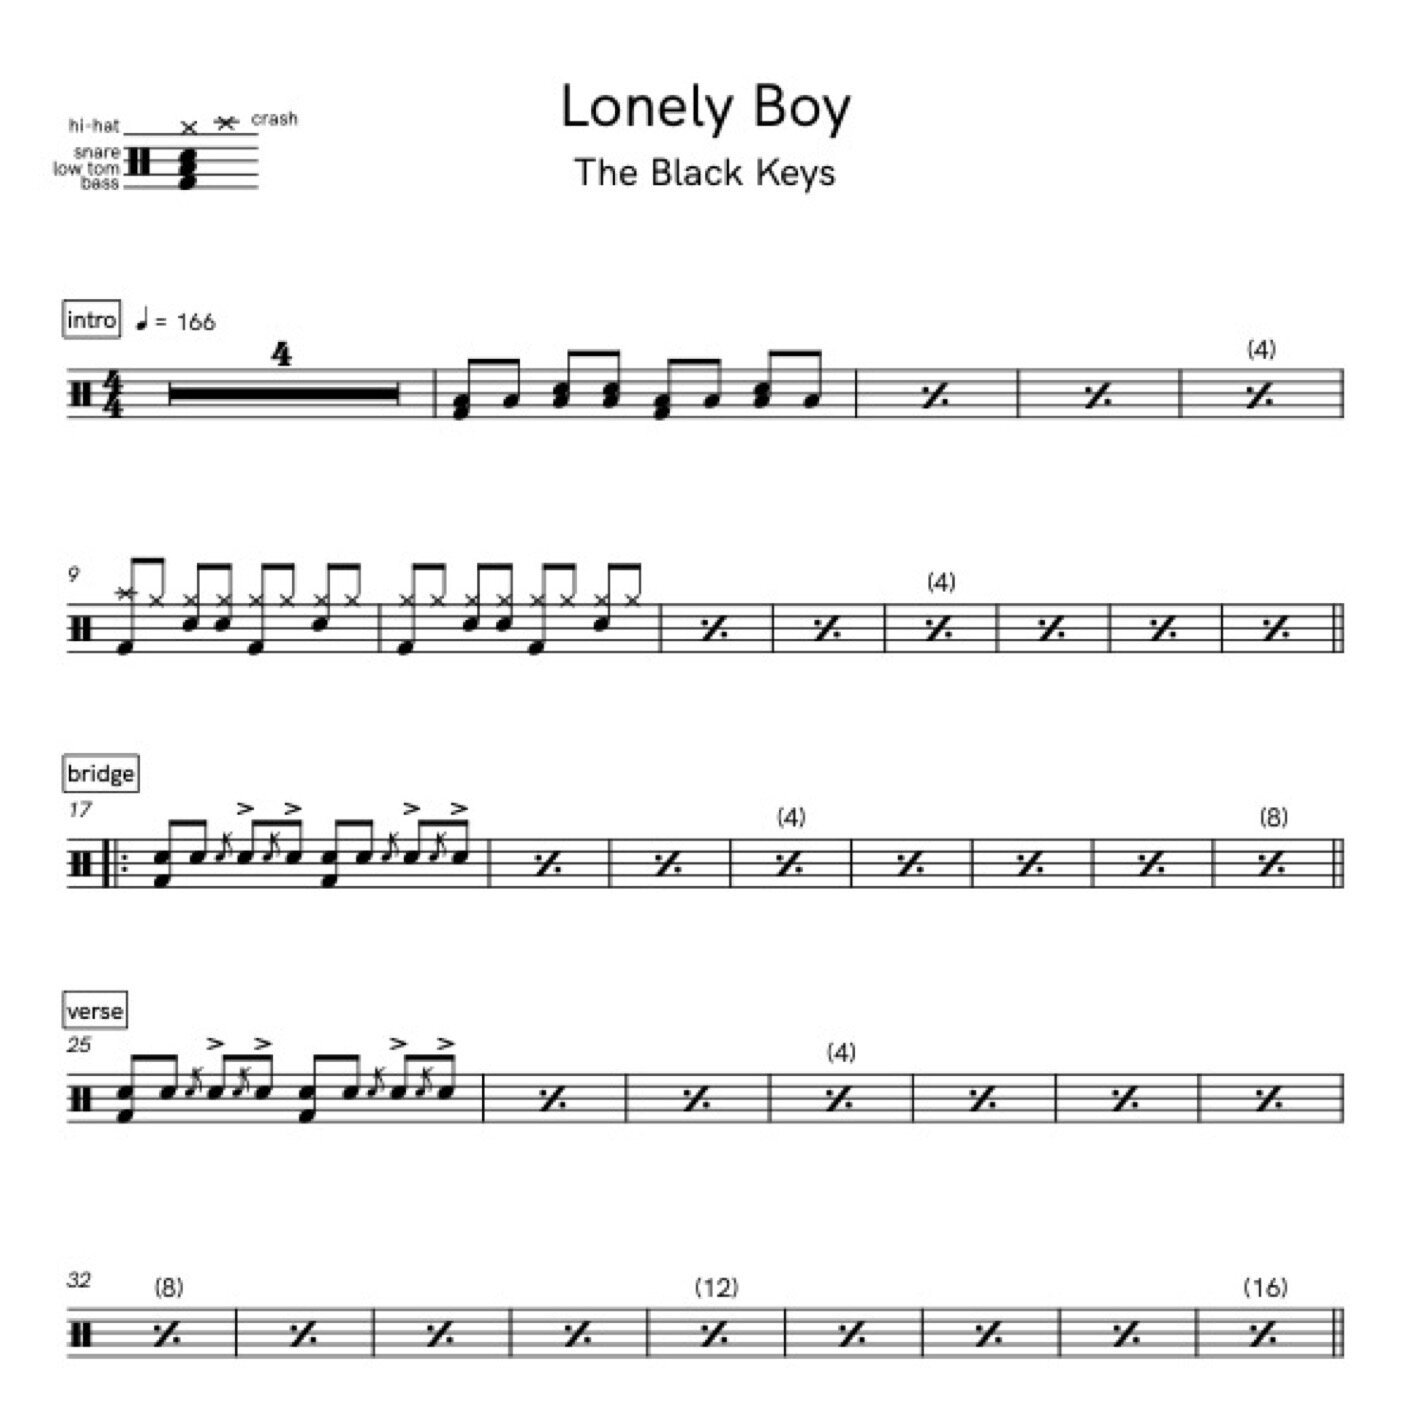 The Black Keys – Lonely Boy Lyrics